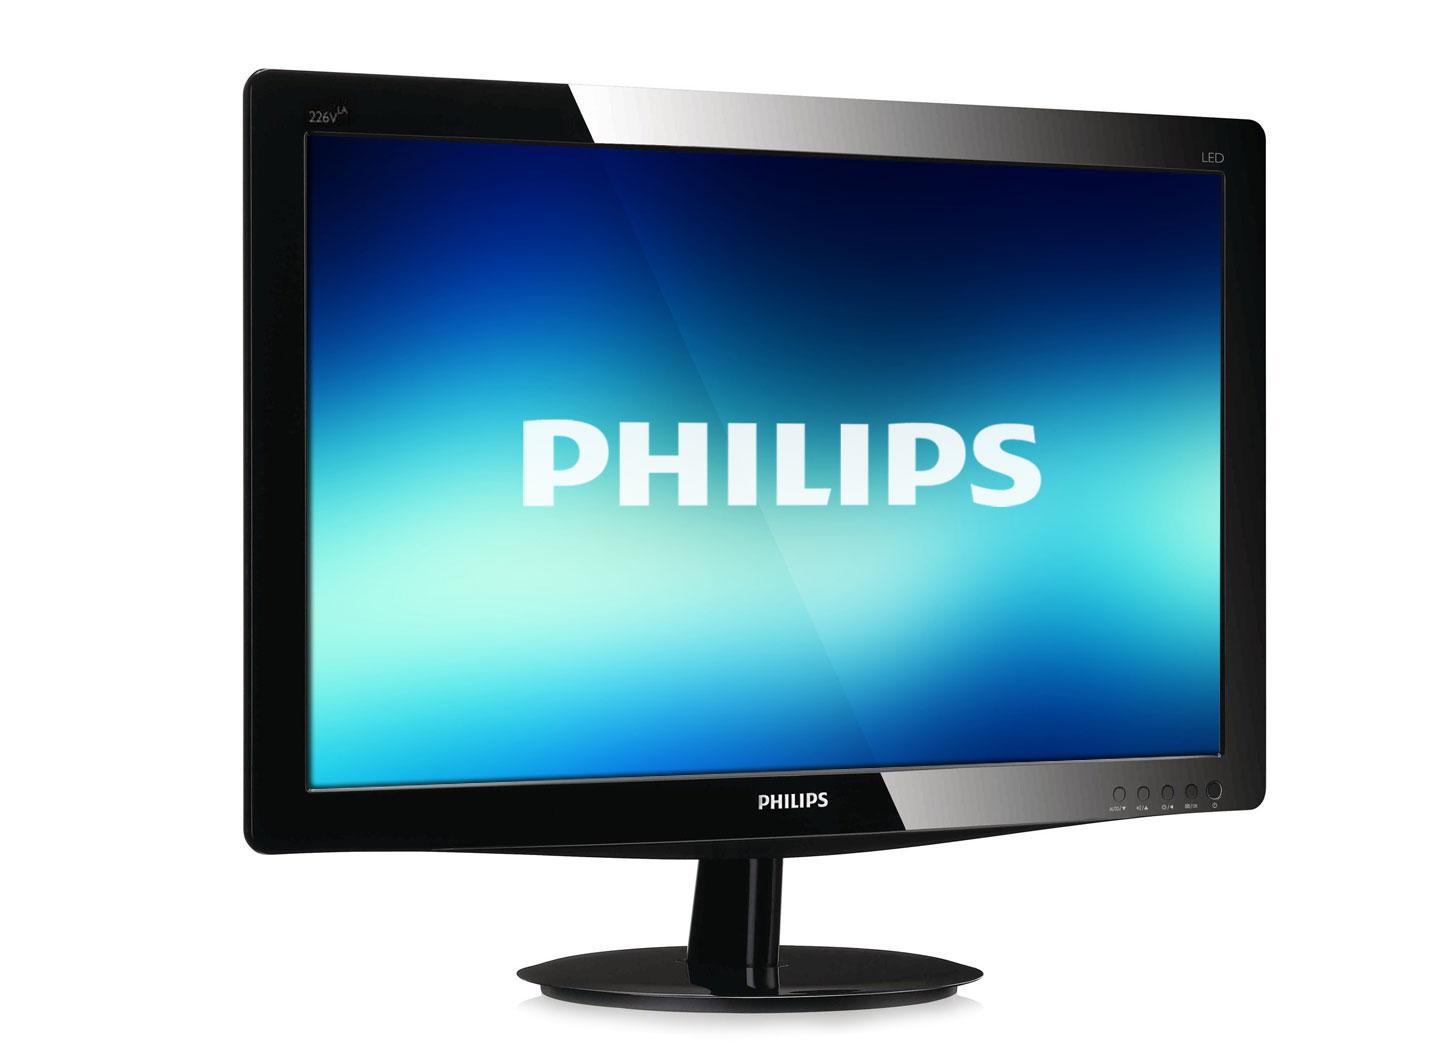 Заказать мониторы Philips (Филипс) в Самаре — КОСС Плюс